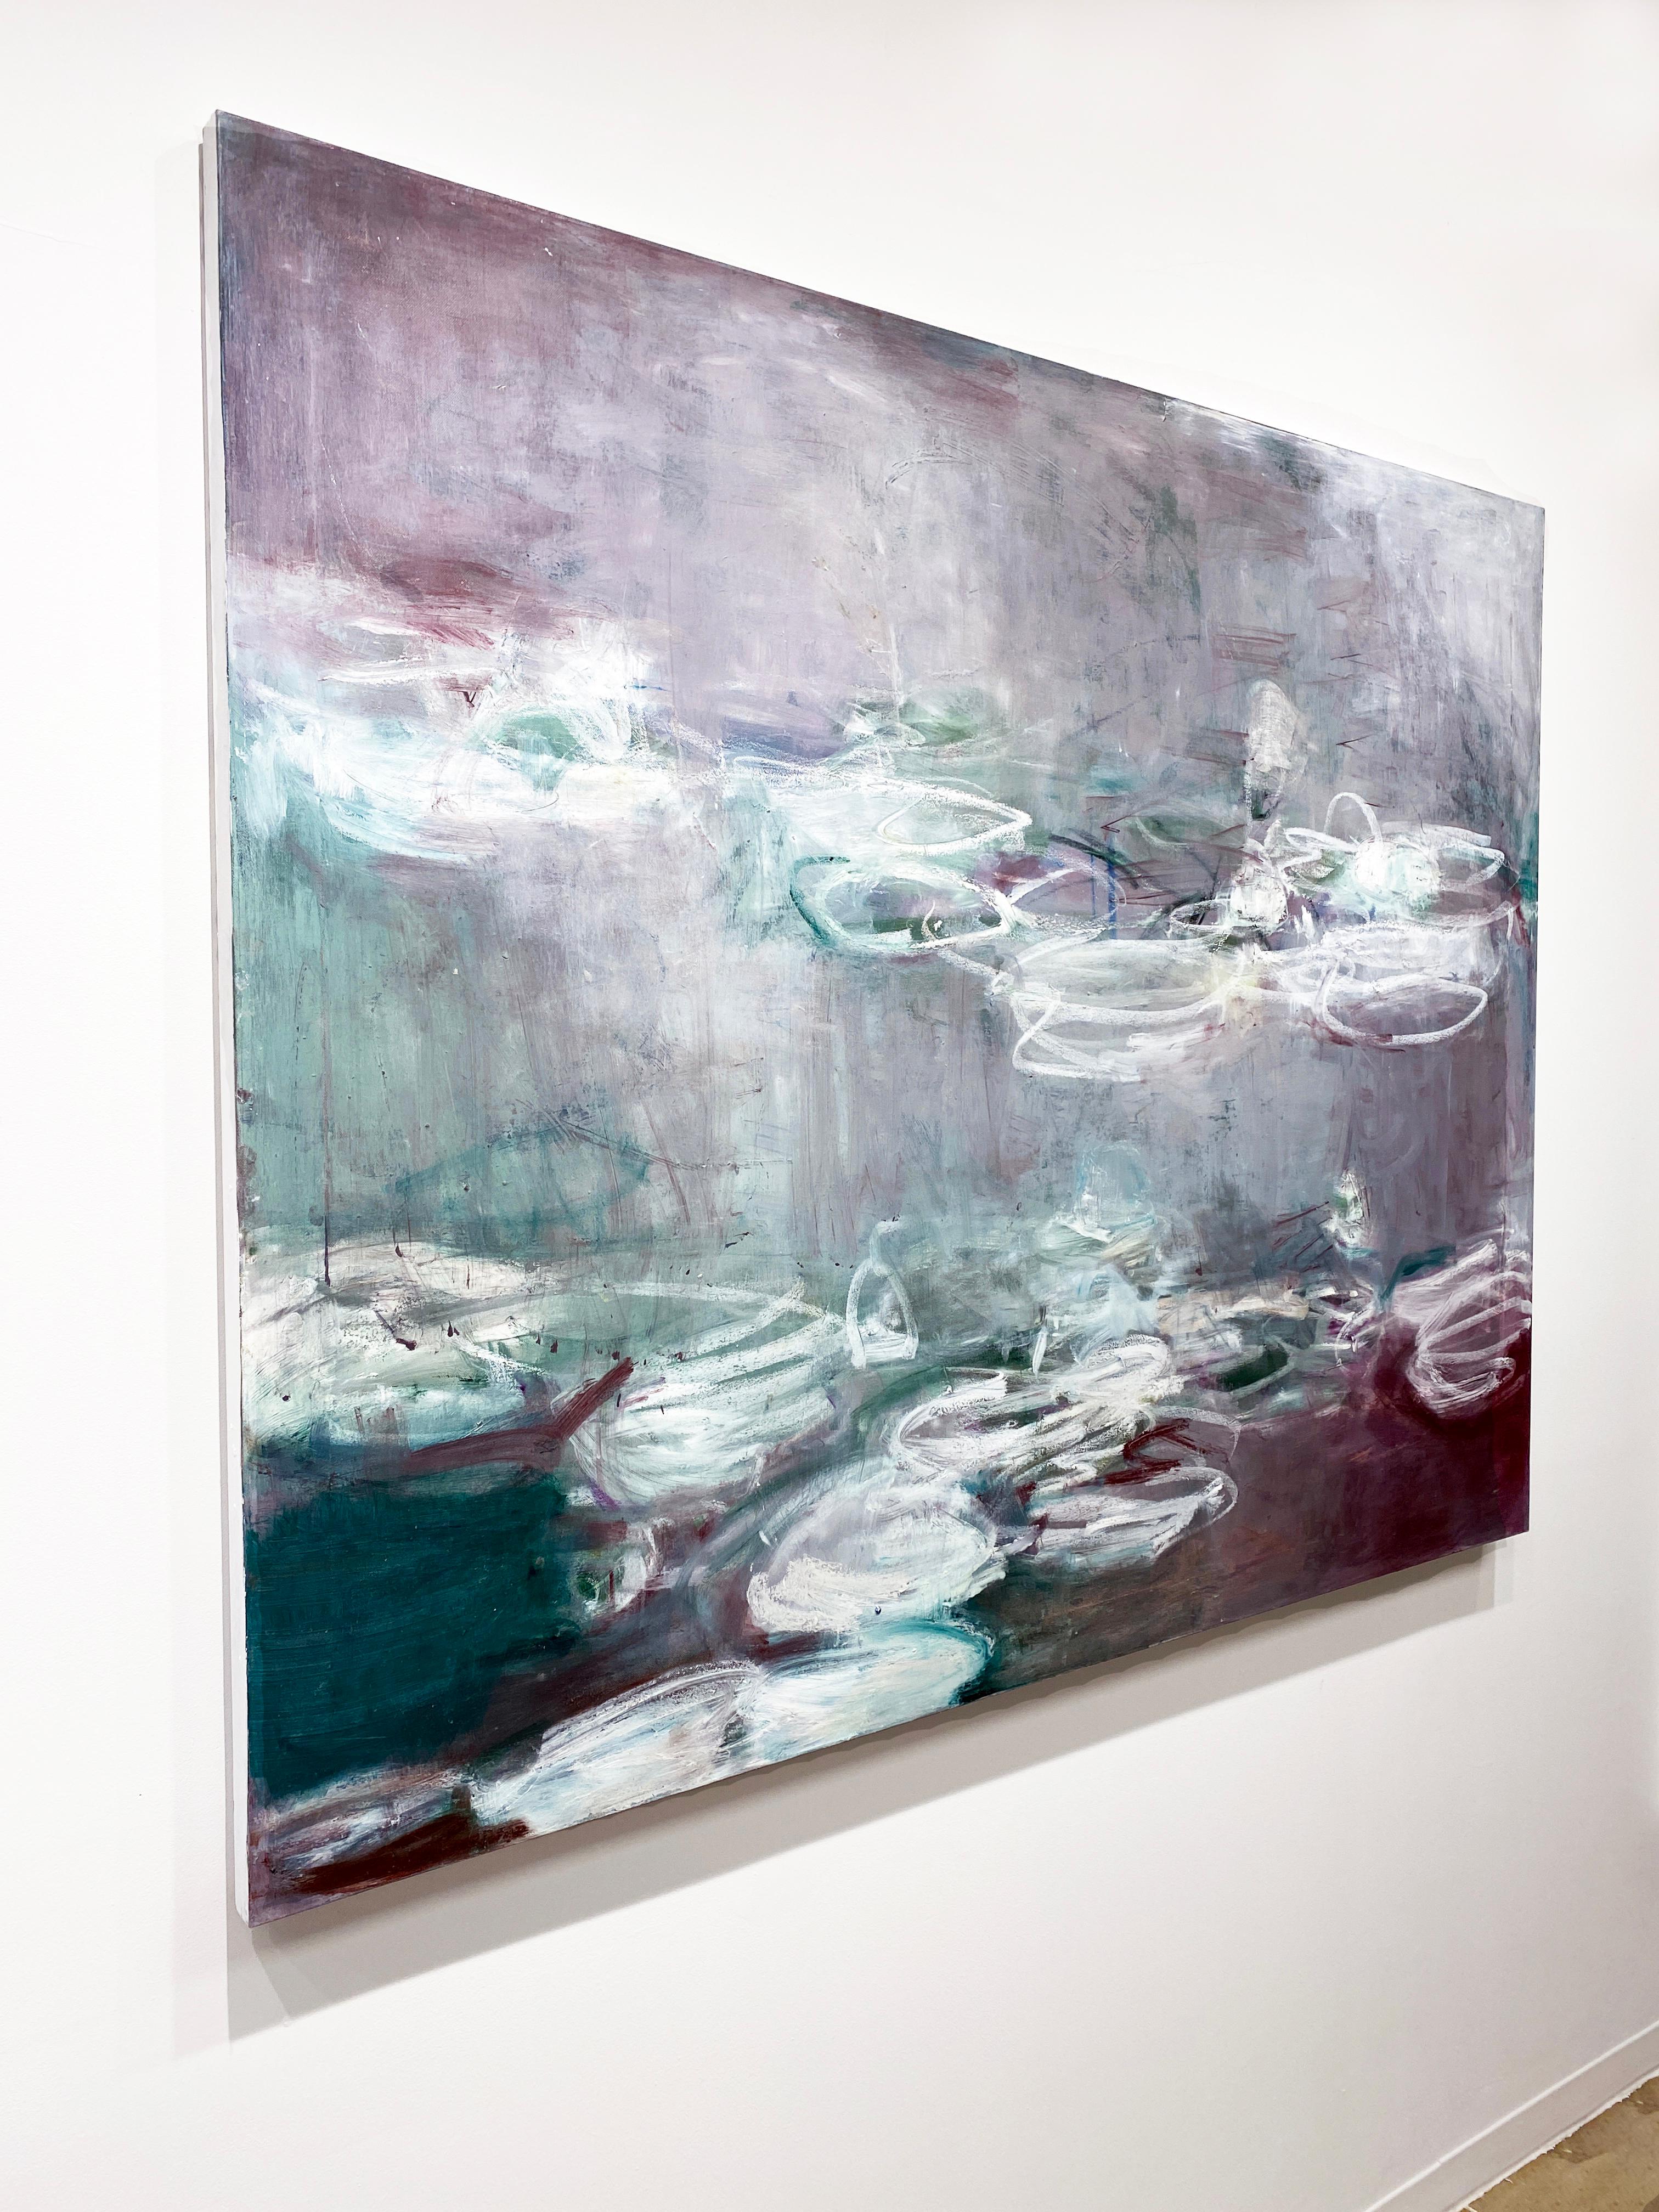 Peinture à l'huile impressionniste de l'artiste new-yorkaise Sandrine Kern « White Lilies » 2